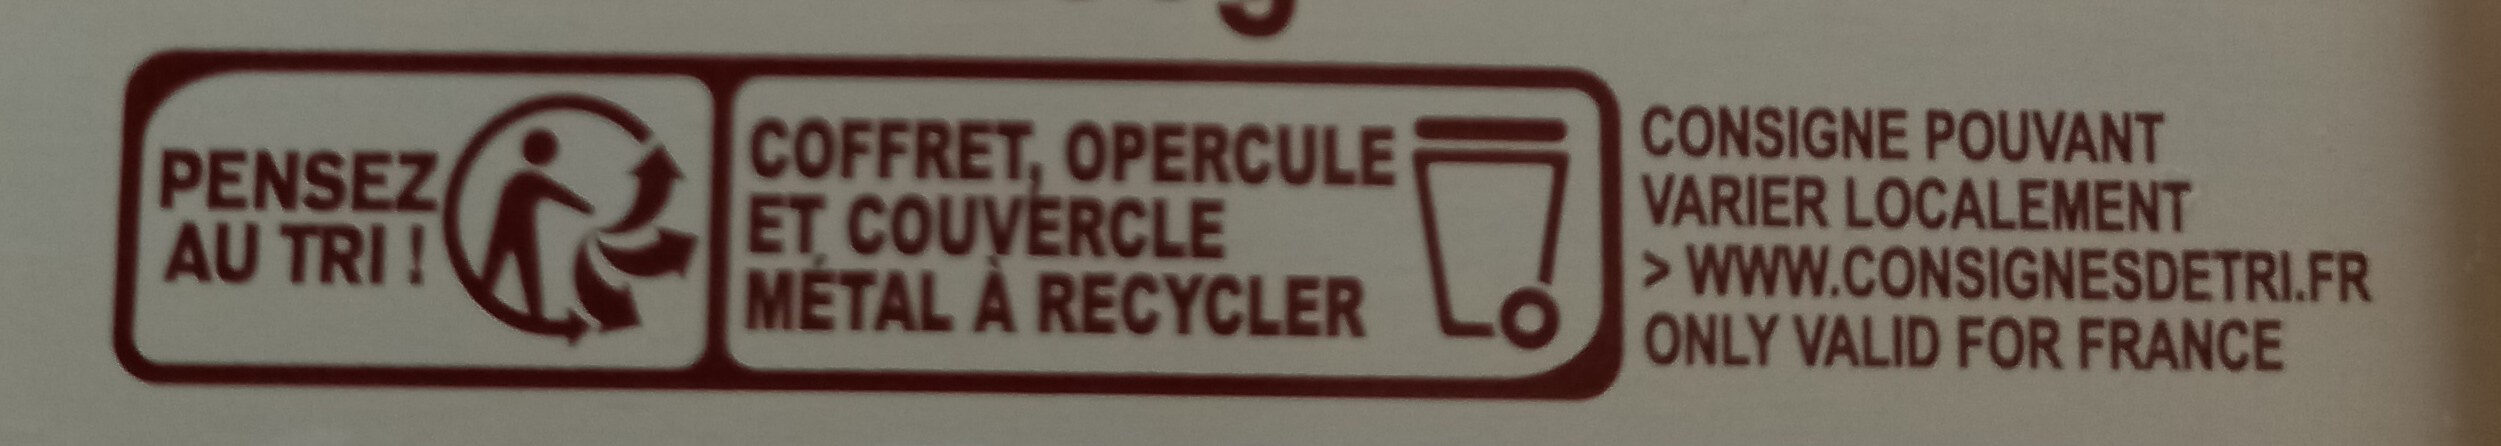 Thé Earl Grey coffret - Instruction de recyclage et/ou informations d'emballage